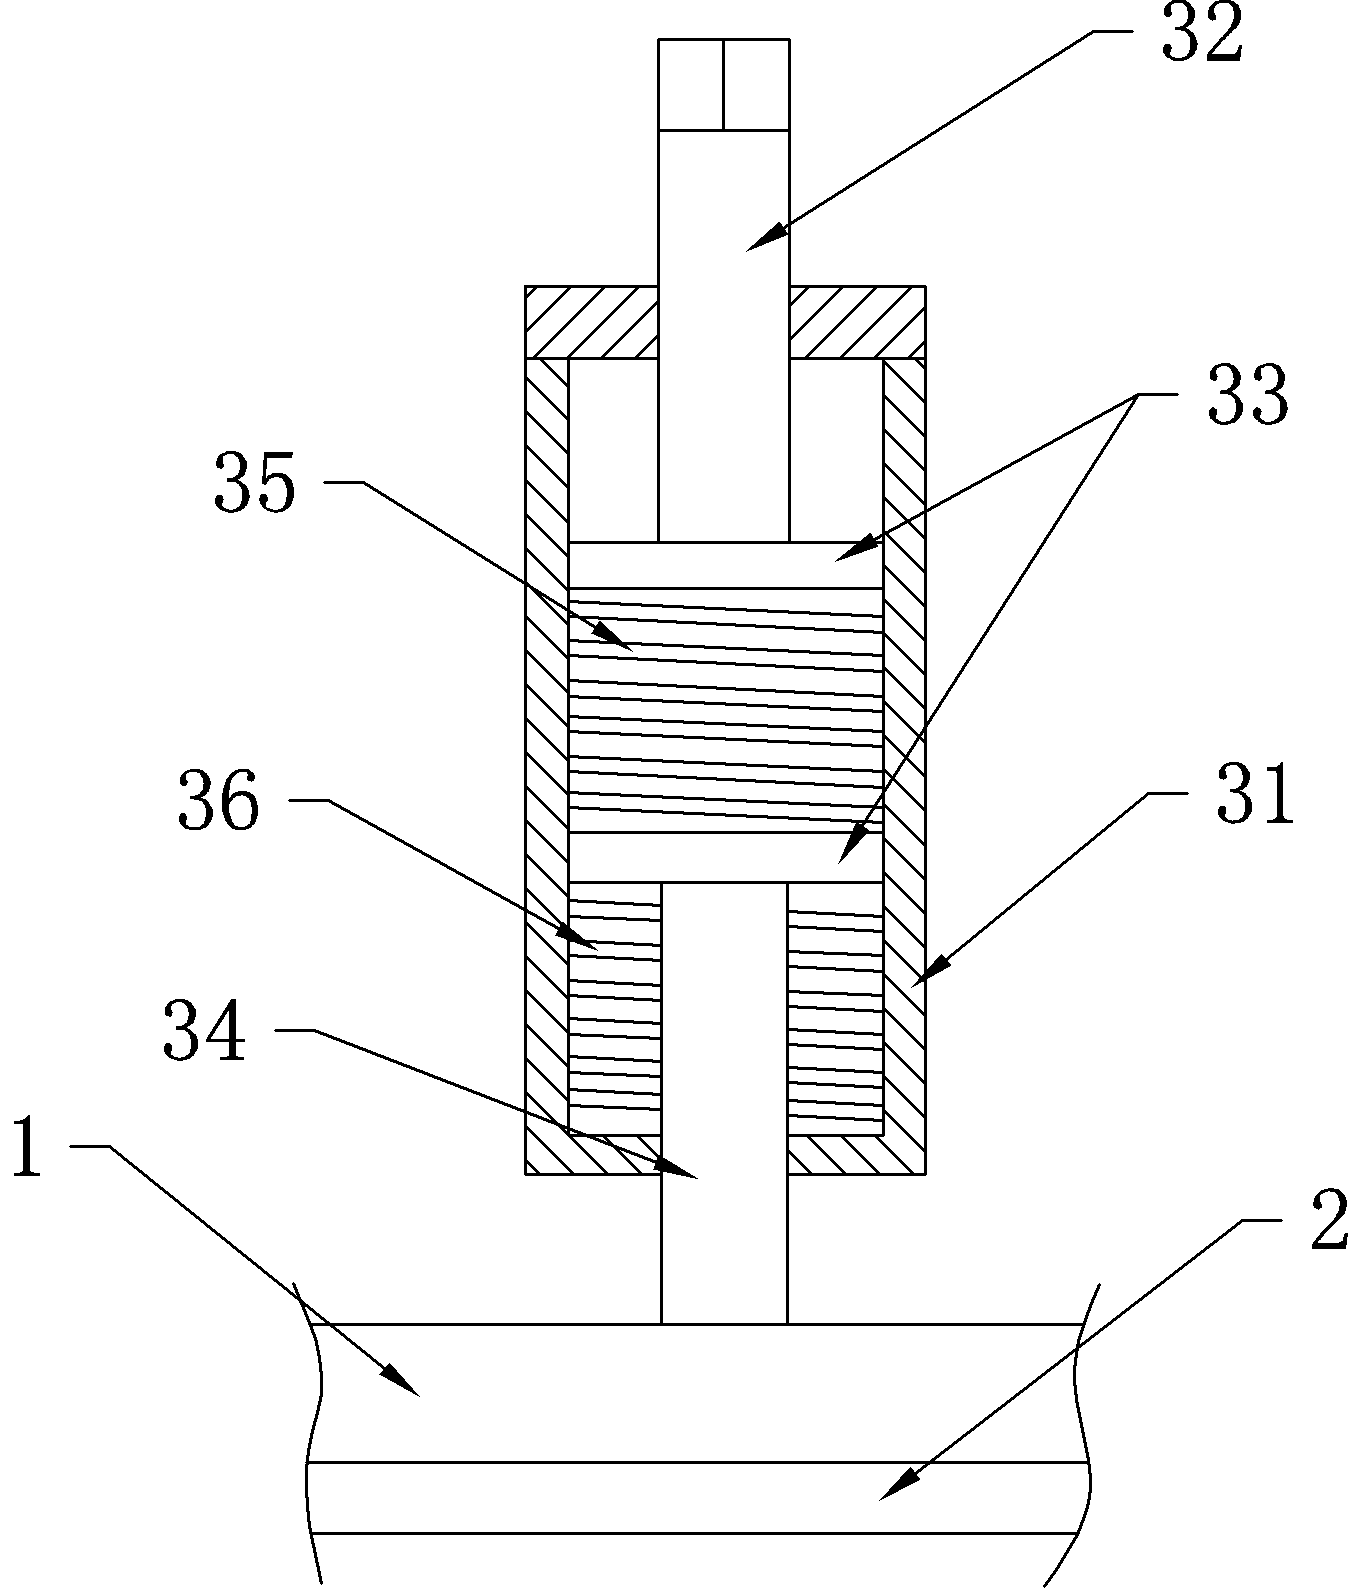 Cleaning mechanism of belt conveyor